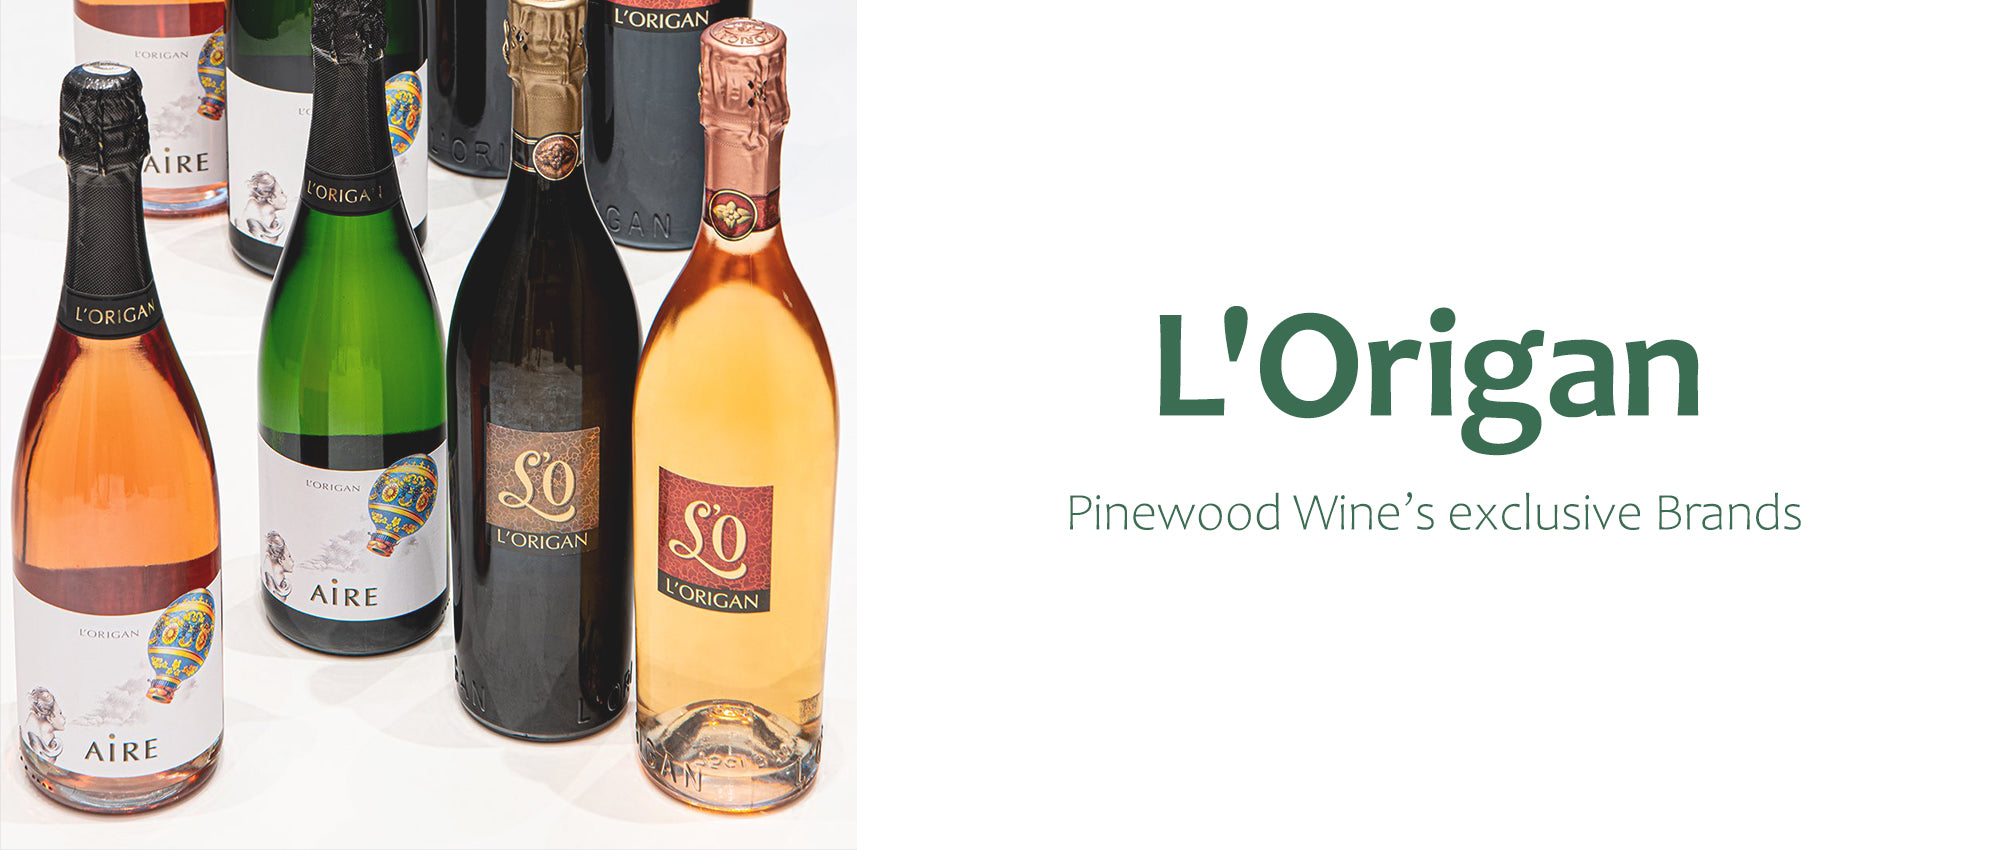 Pinewood Wine: L'Origan